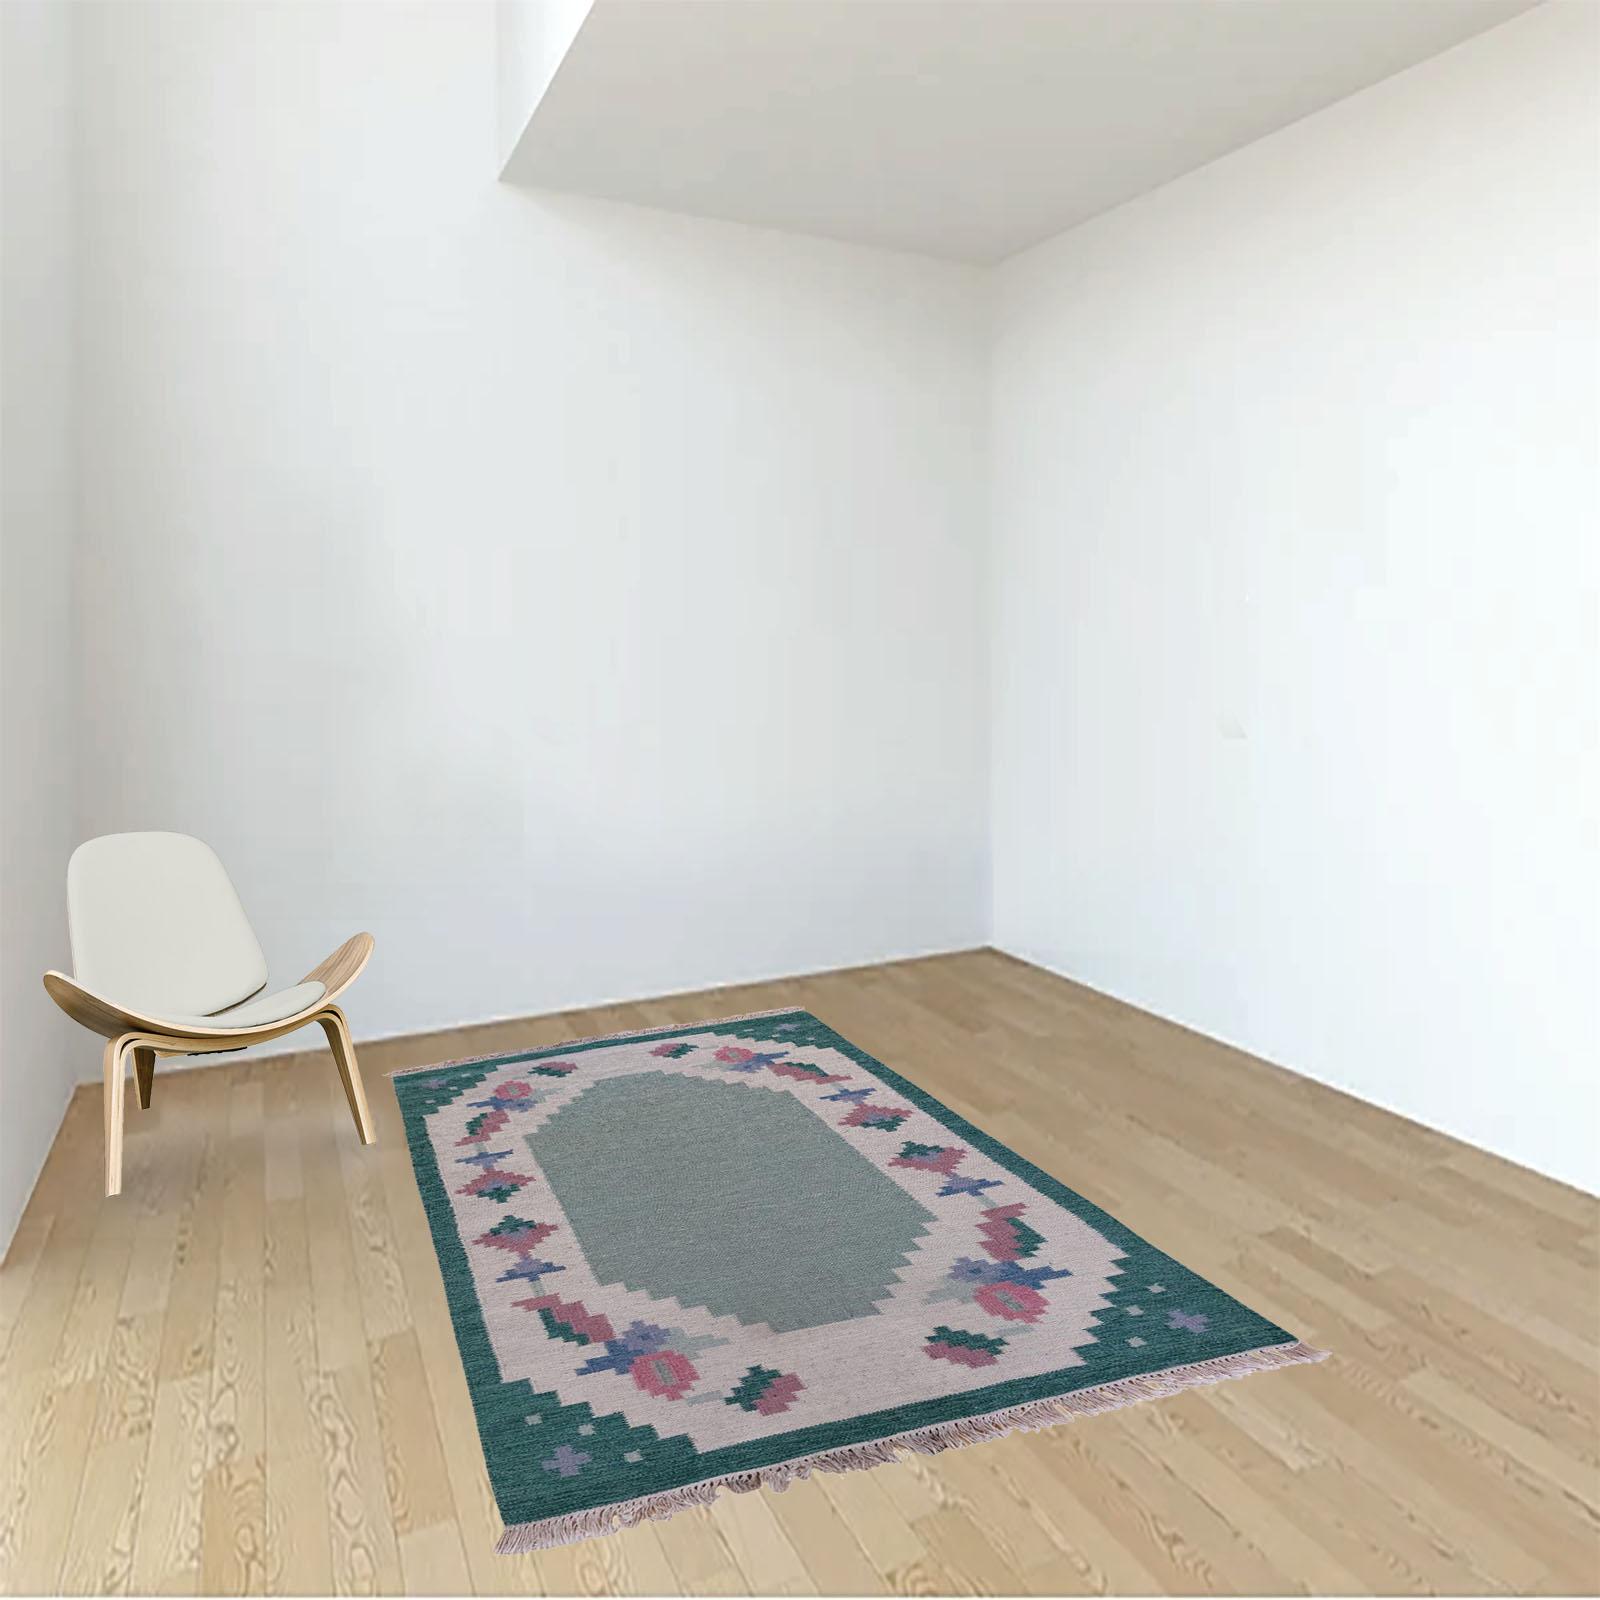 Echter skandinavischer Kilim-Teppich im Vintage-Stil. Stilisiertes florales Design mit leerer Mitte, geeignet, um es unter einen Couchtisch zu stellen.
Die Farbpalette besteht aus sanften Schattierungen von Tealgrün, Rosa und Blau. Ein elegantes und